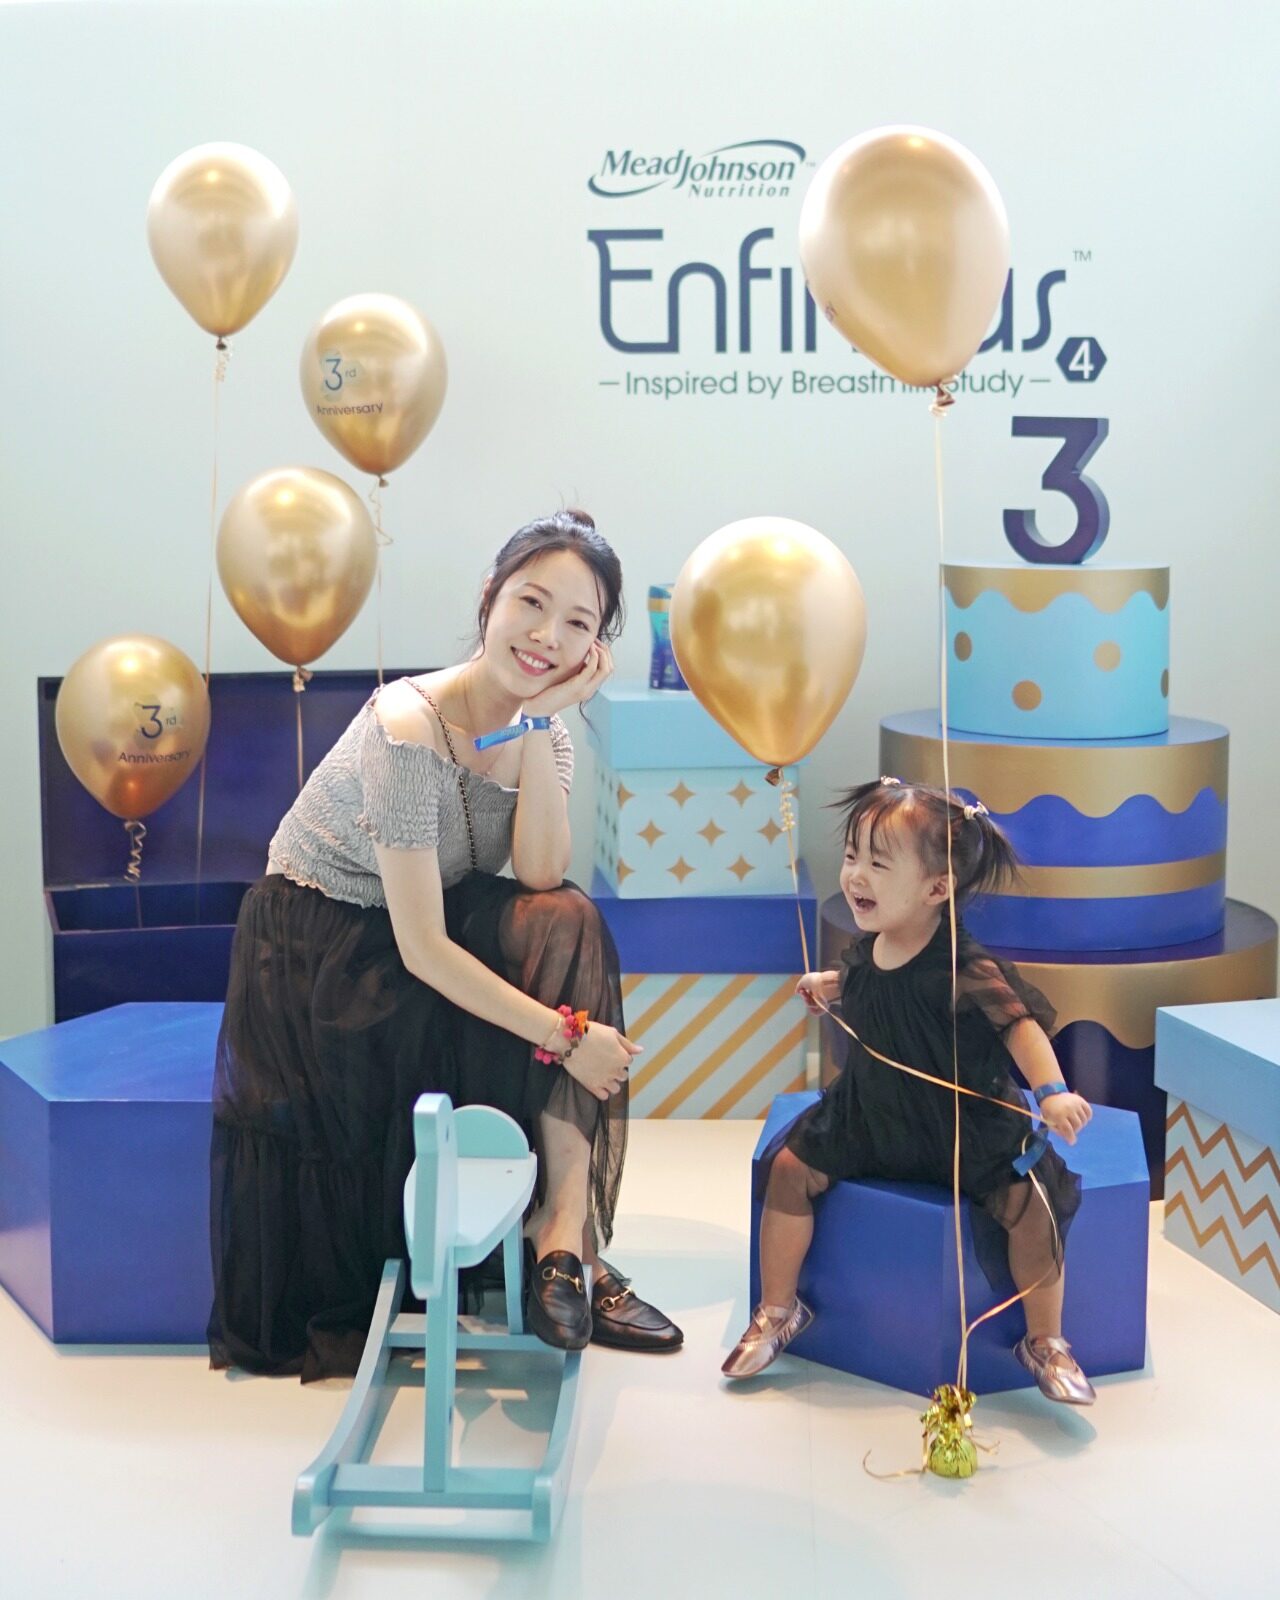 鍾嘉欣及一眾星級靚媽慶祝Enfinitas三週年